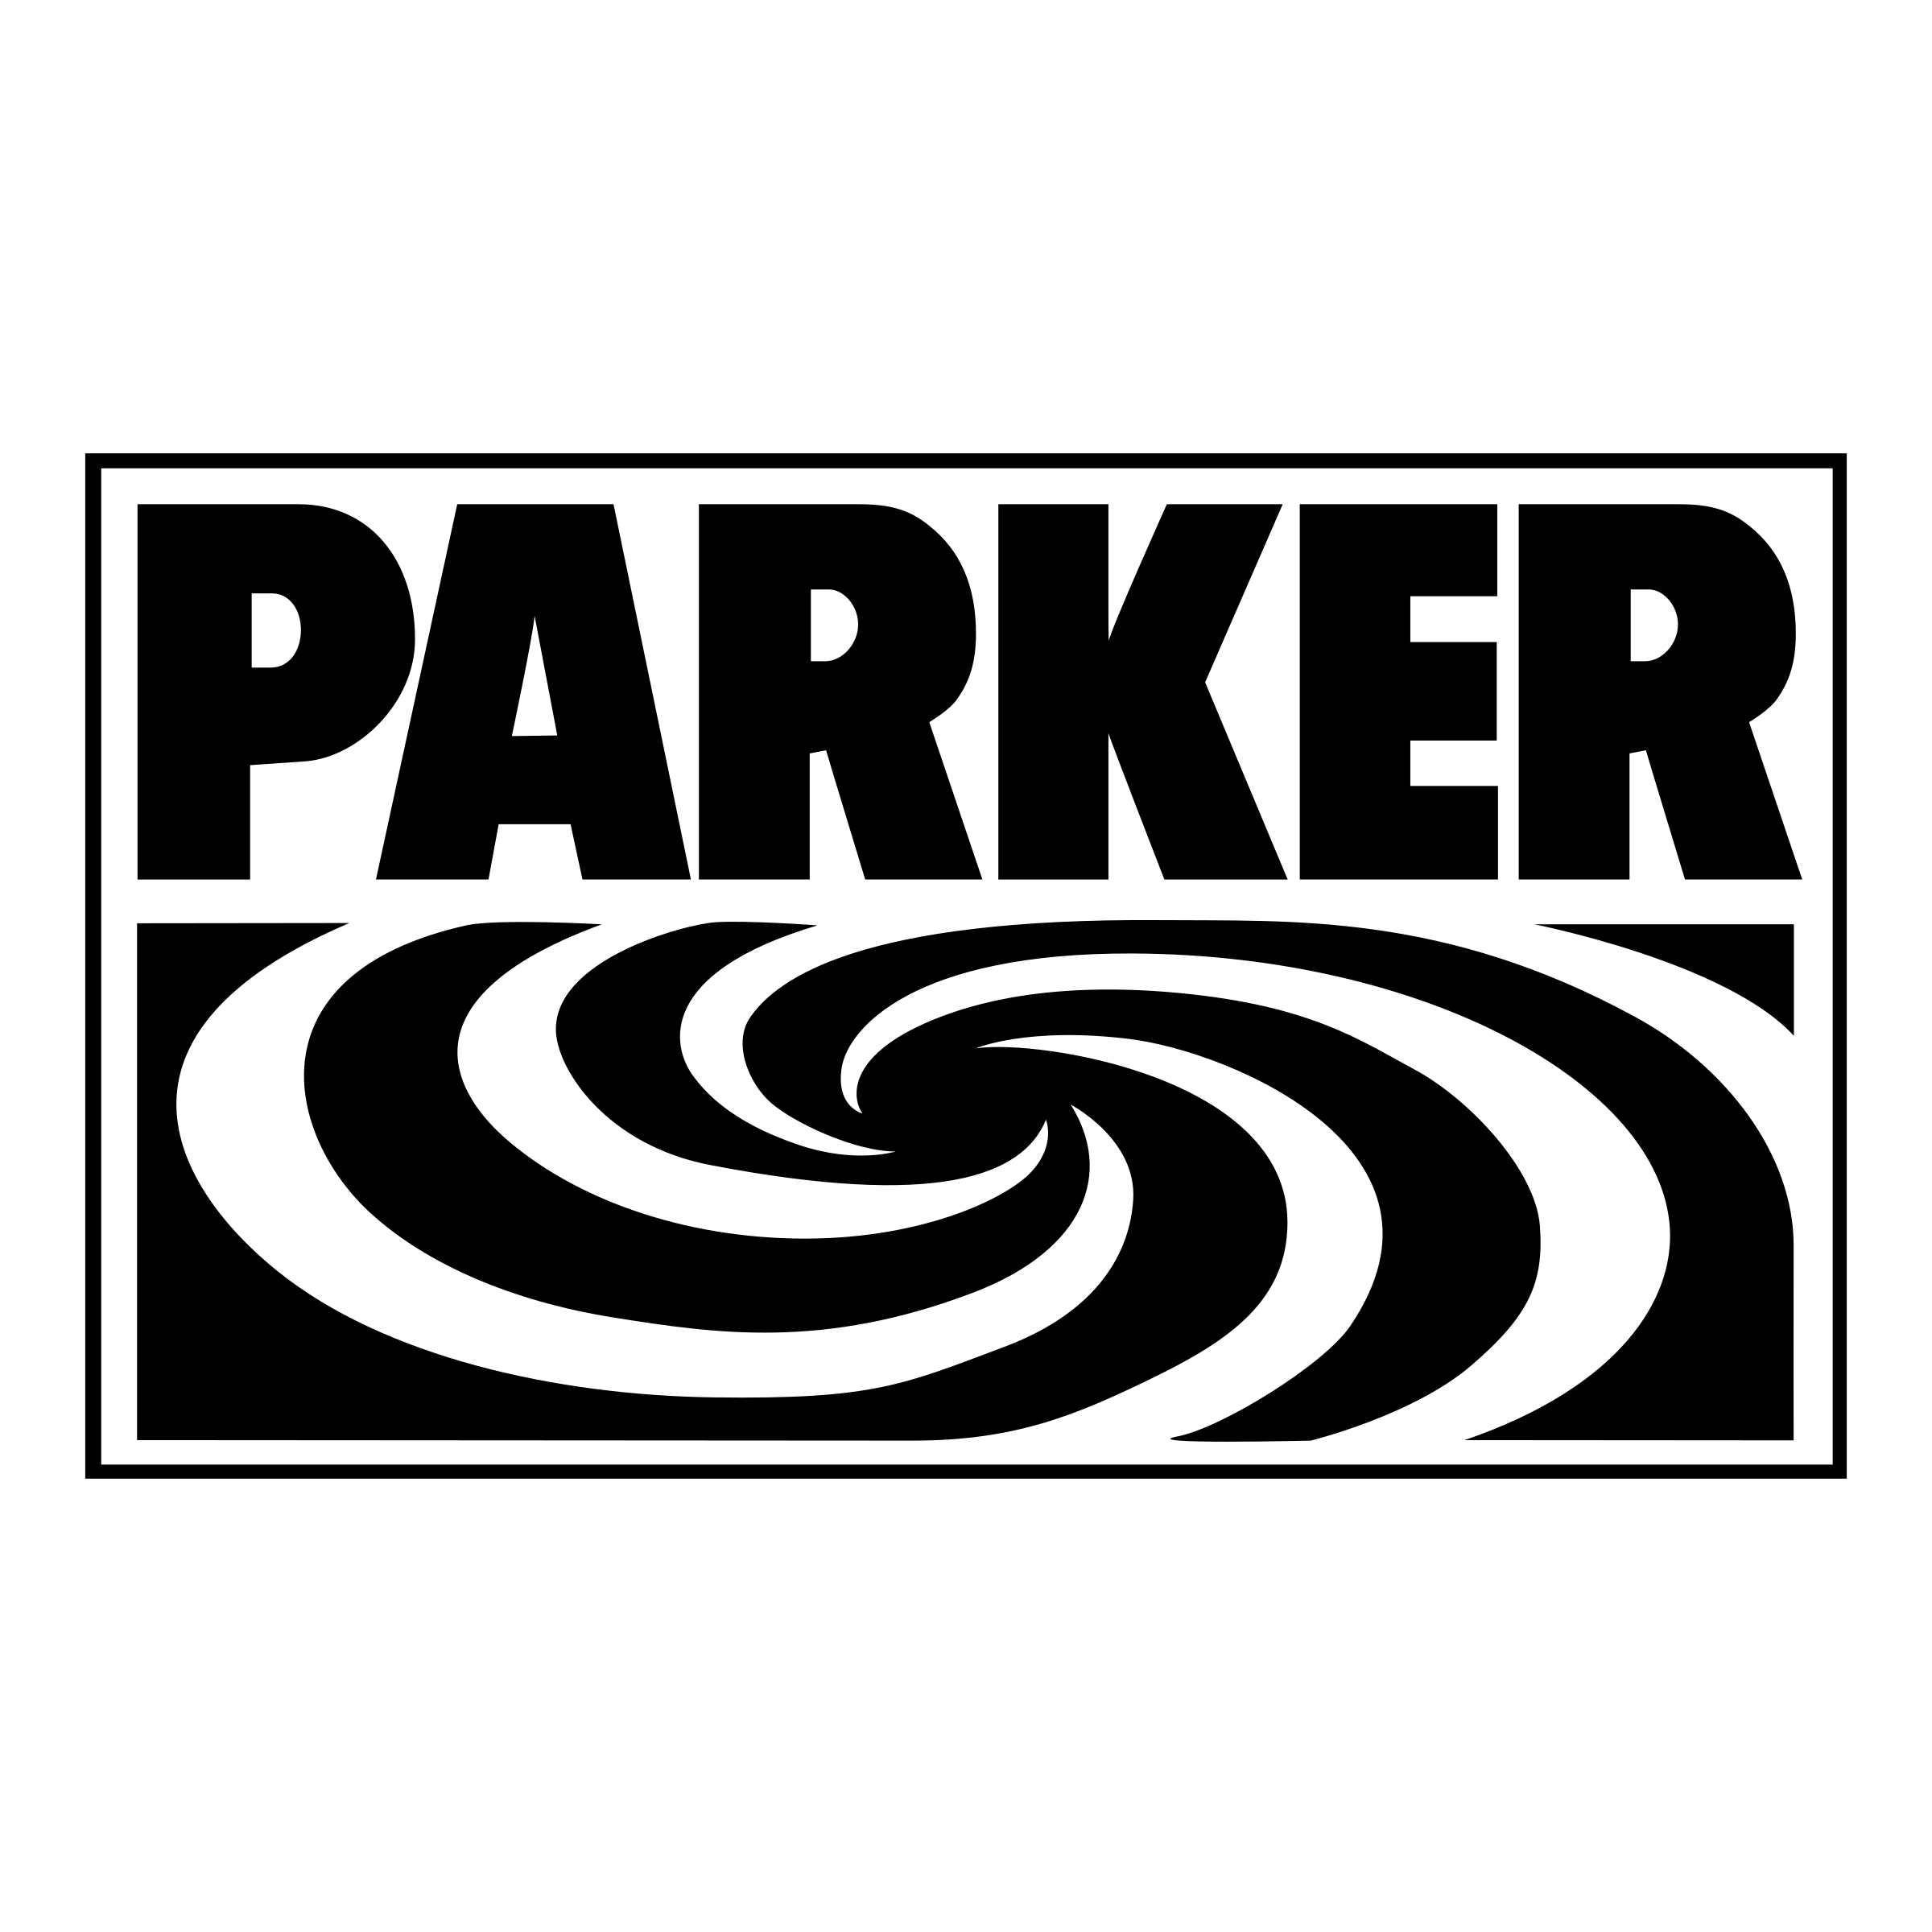 Parker Logo - Parker Logo PNG Transparent & SVG Vector - Freebie Supply